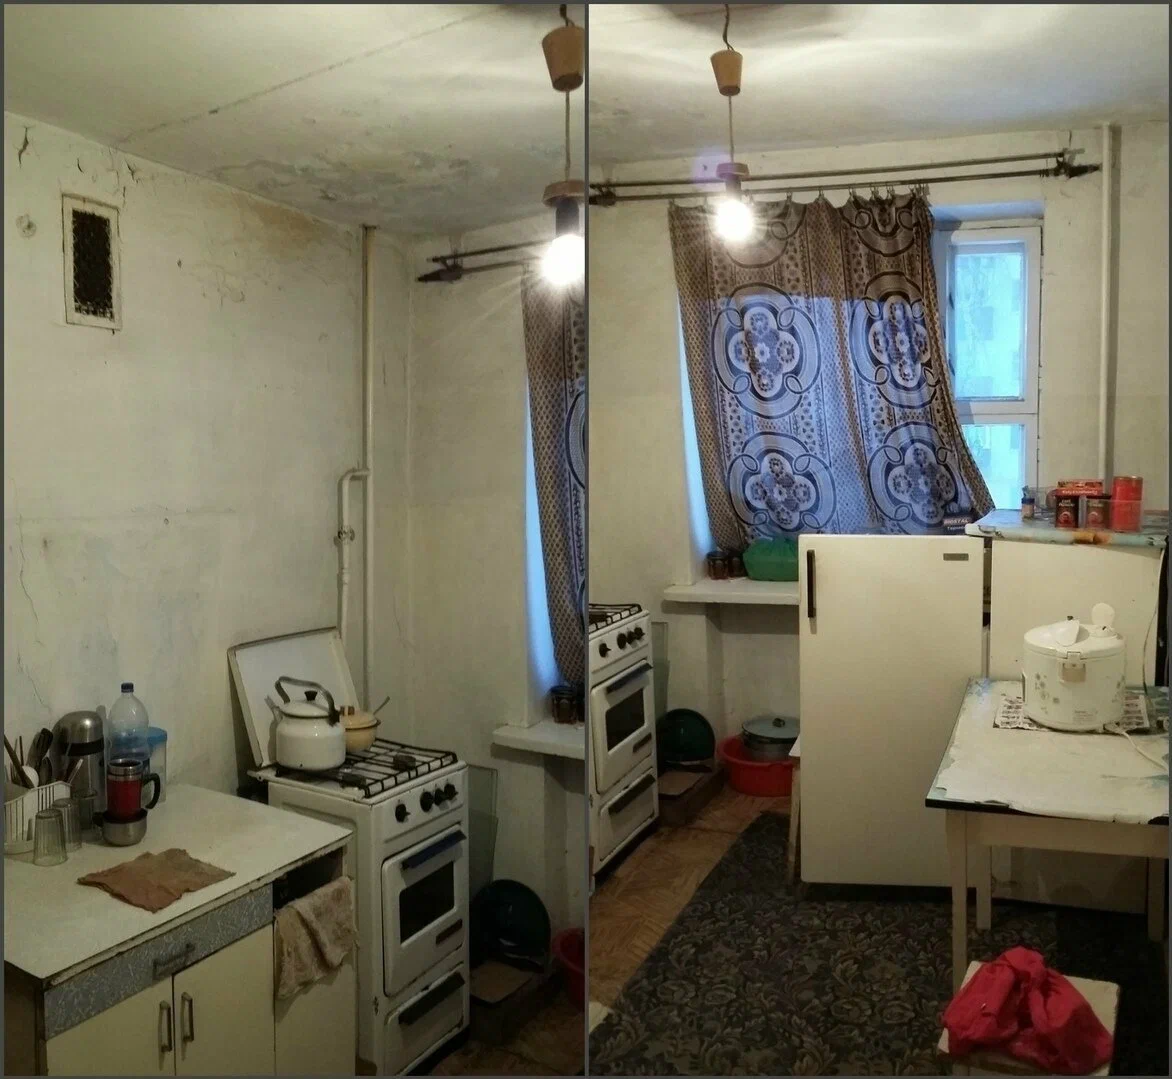 Бюджетный ремонт квартиры своими руками: фото до и после